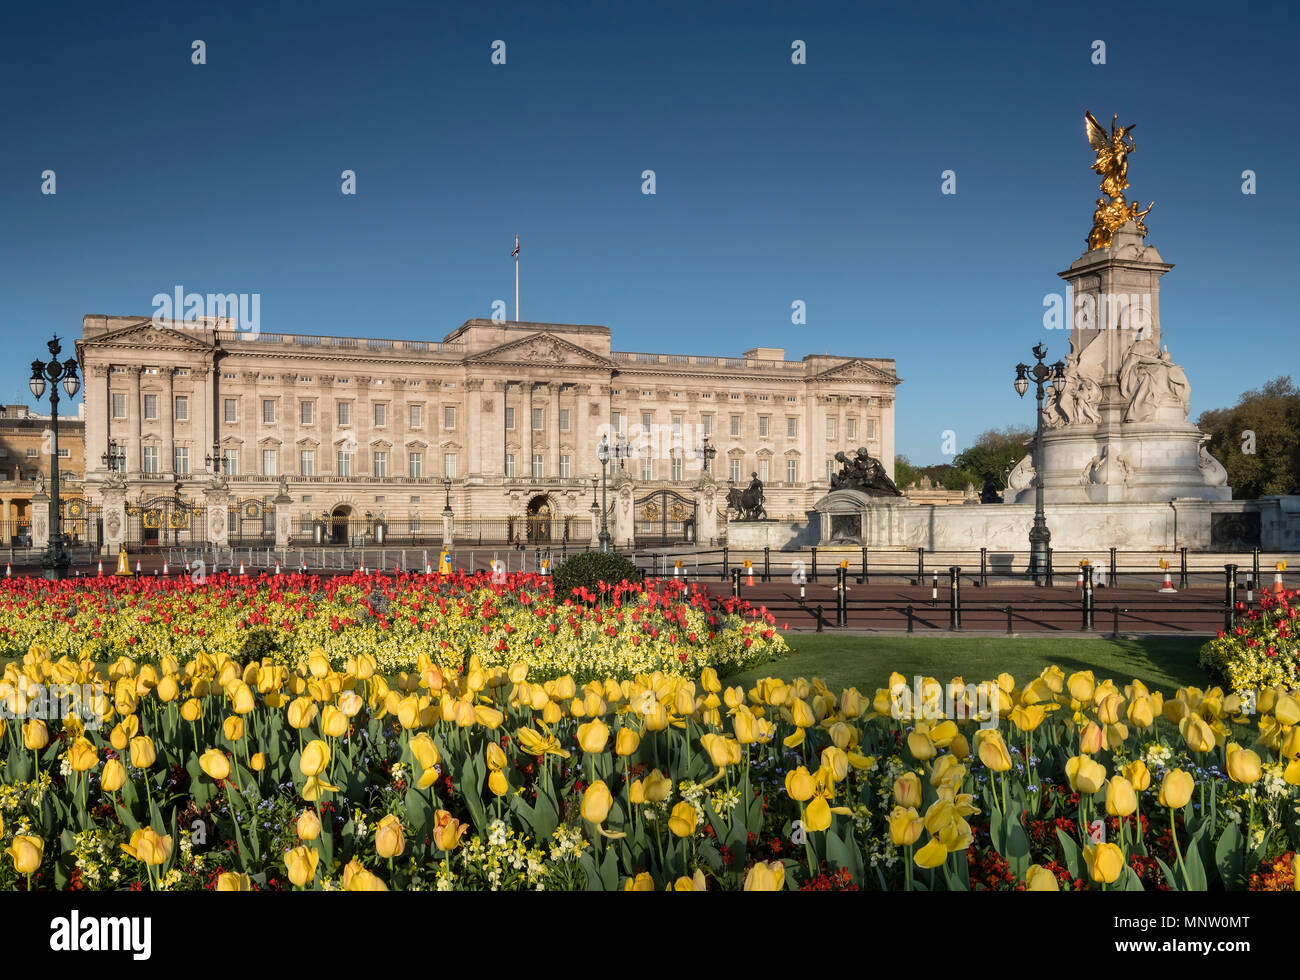 Le palais de Buckingham et du Victoria Memorial au printemps, London, England, UK Banque D'Images